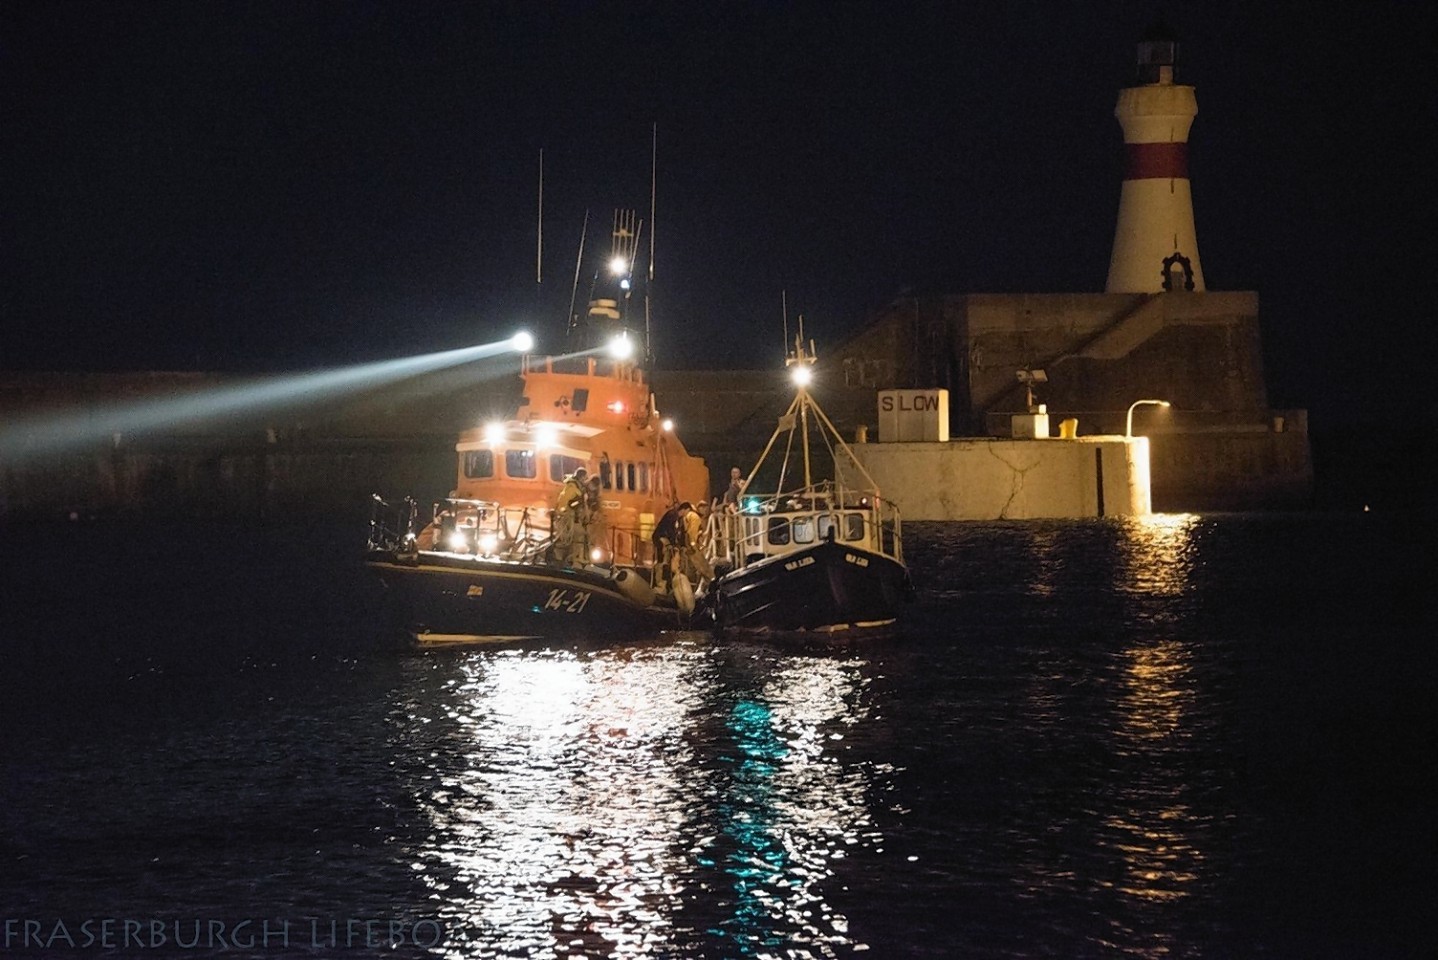 Fraserburgh Lifeboat.